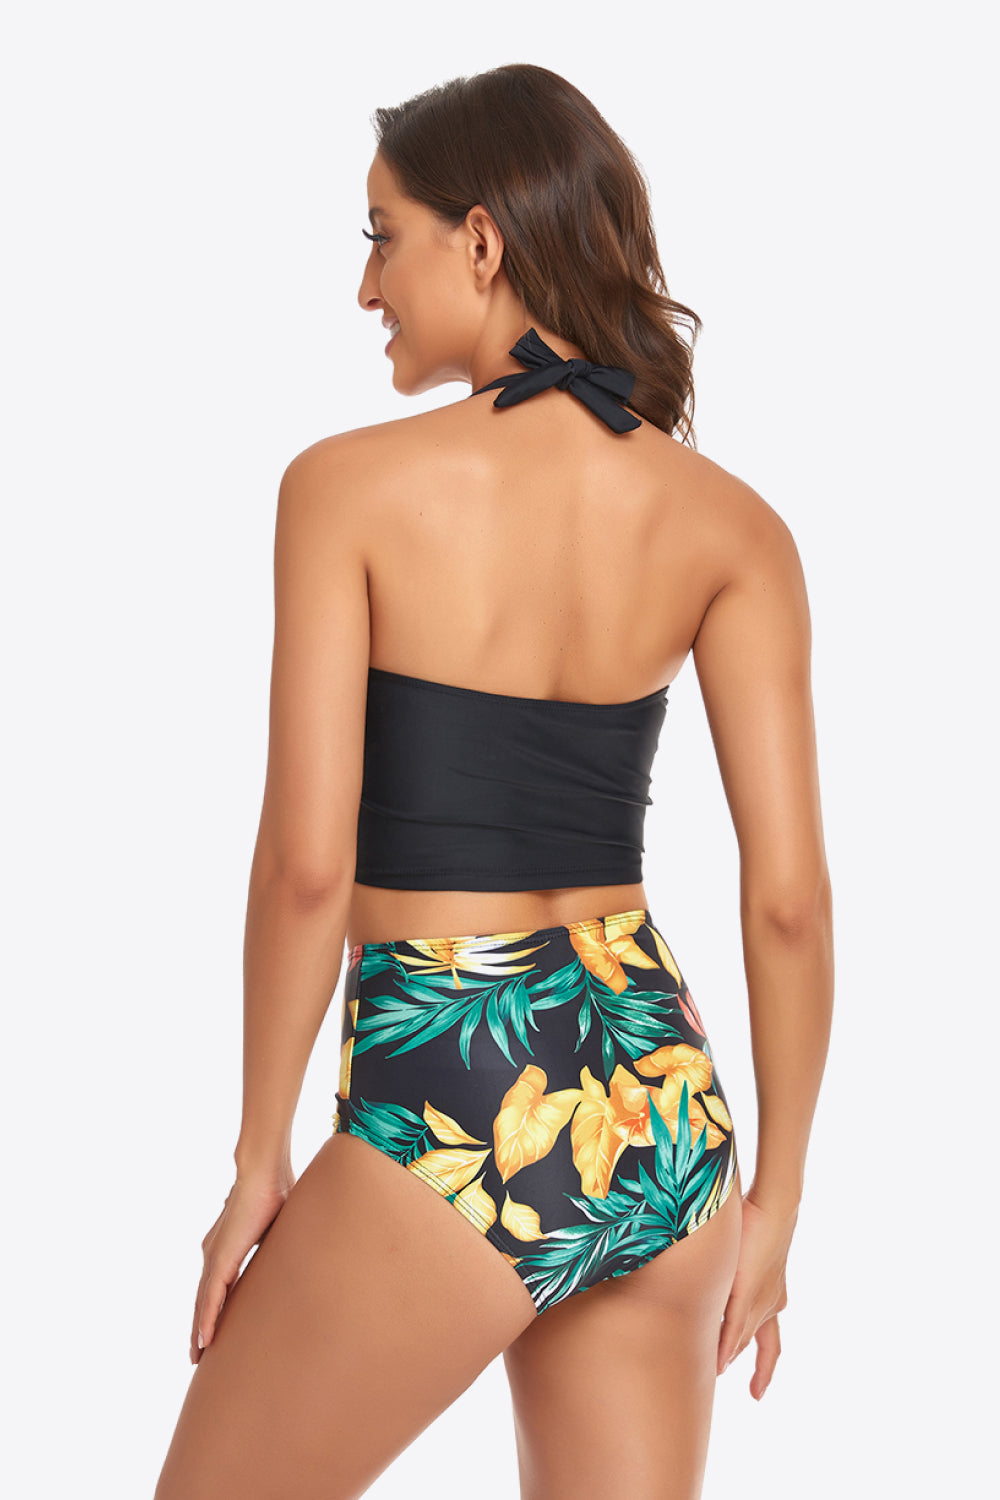 Botanical Print Halter Neck Drawstring Detail Bikini Set - Dash Trend